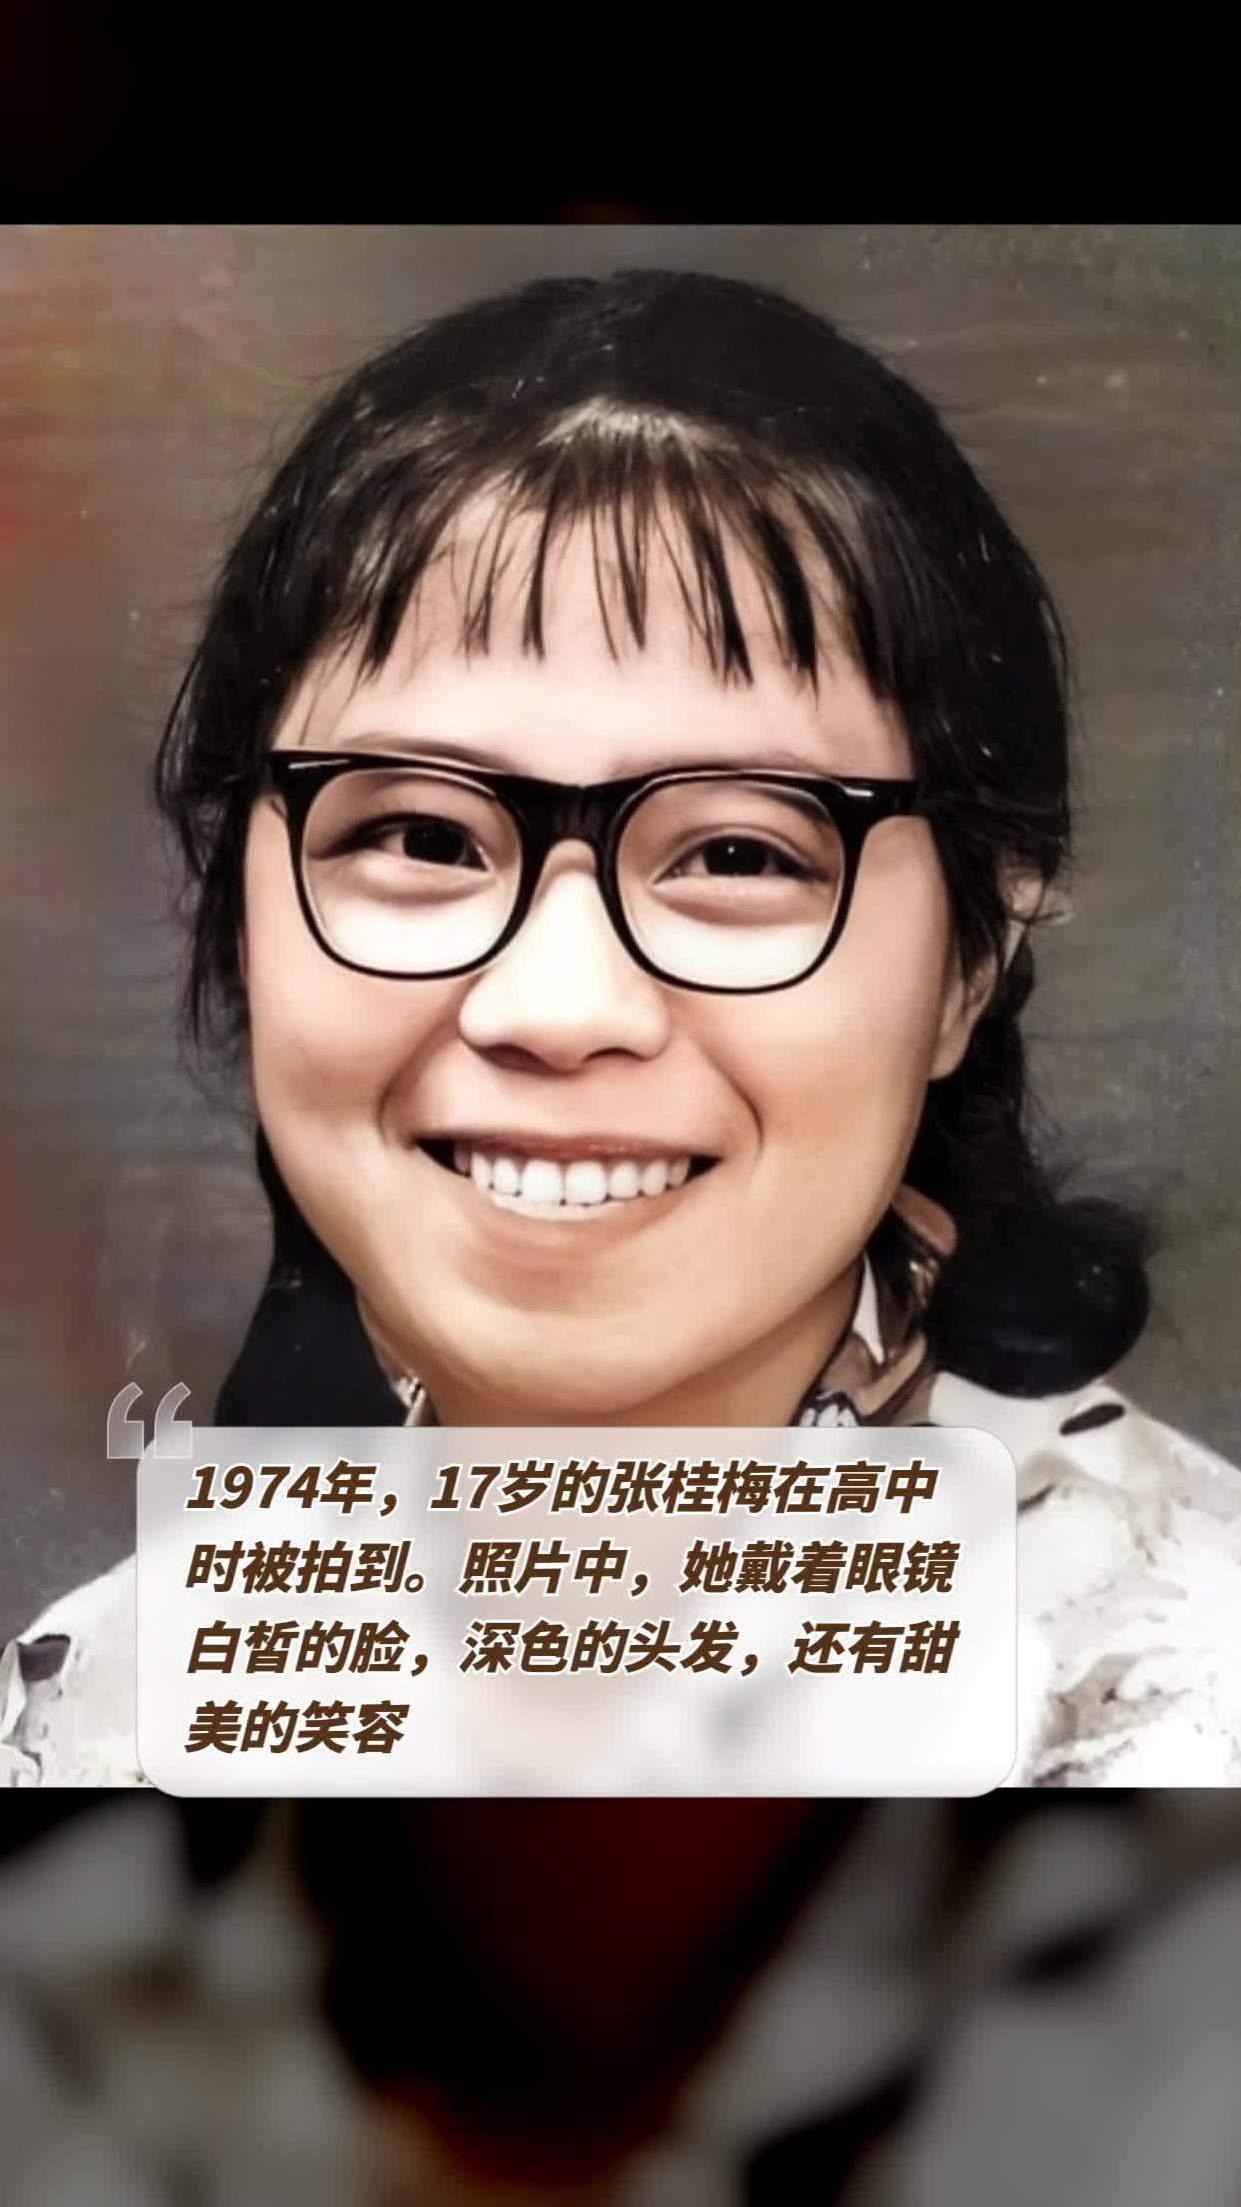 1974年,17岁的张桂梅在高中时被拍到